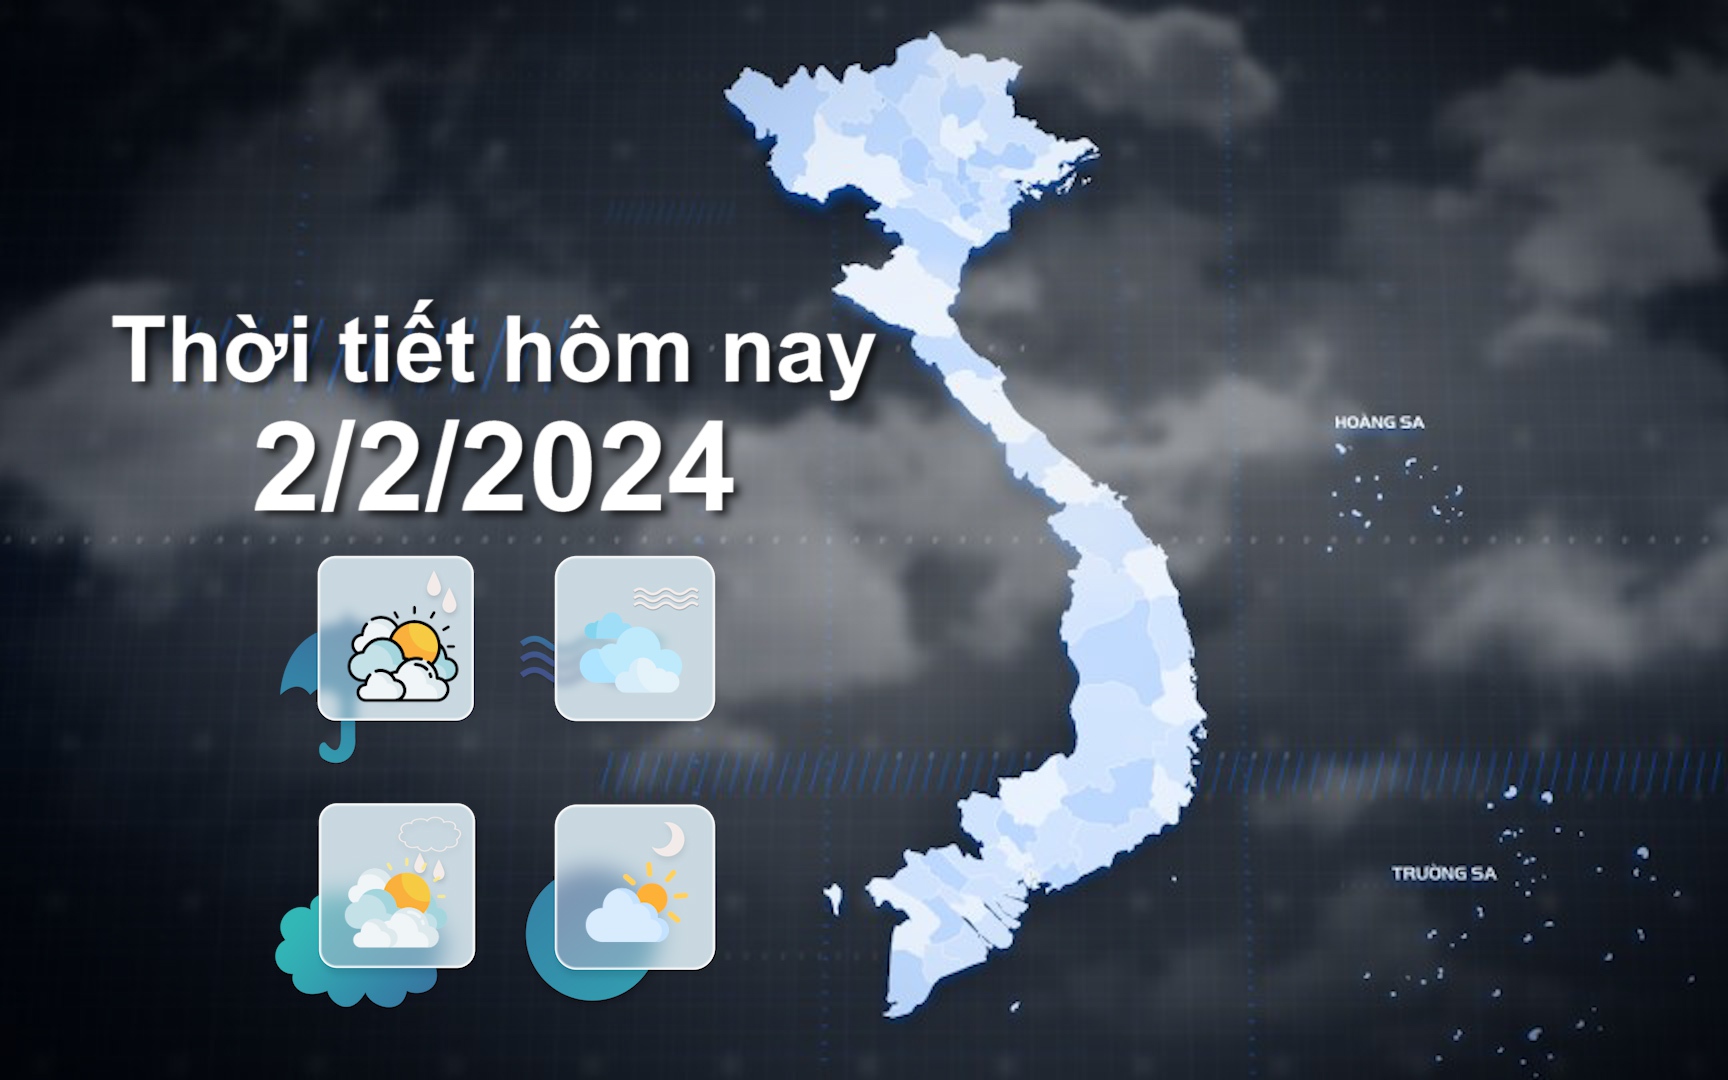 Thời tiết hôm nay 2/2/2024: Bắc Bộ sáng sớm trời rét, mưa phùn, sương mù